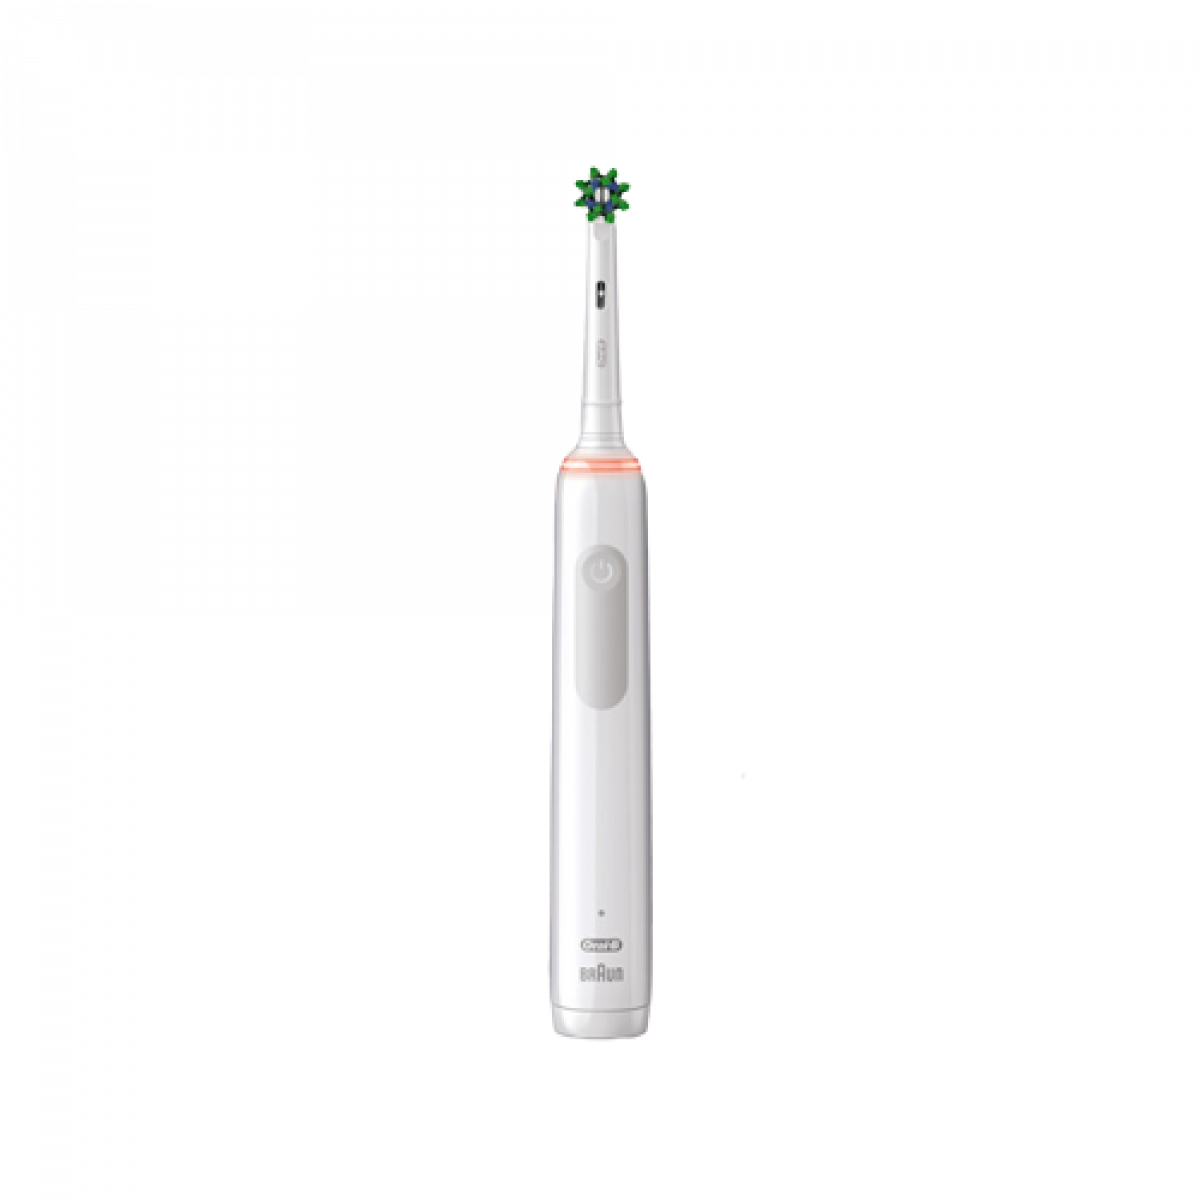 ORAL-B Elektrische Zahnbürste Pro3 Weiß White + 3900N elektrische Black Schwarz, Zahnbürste Sens